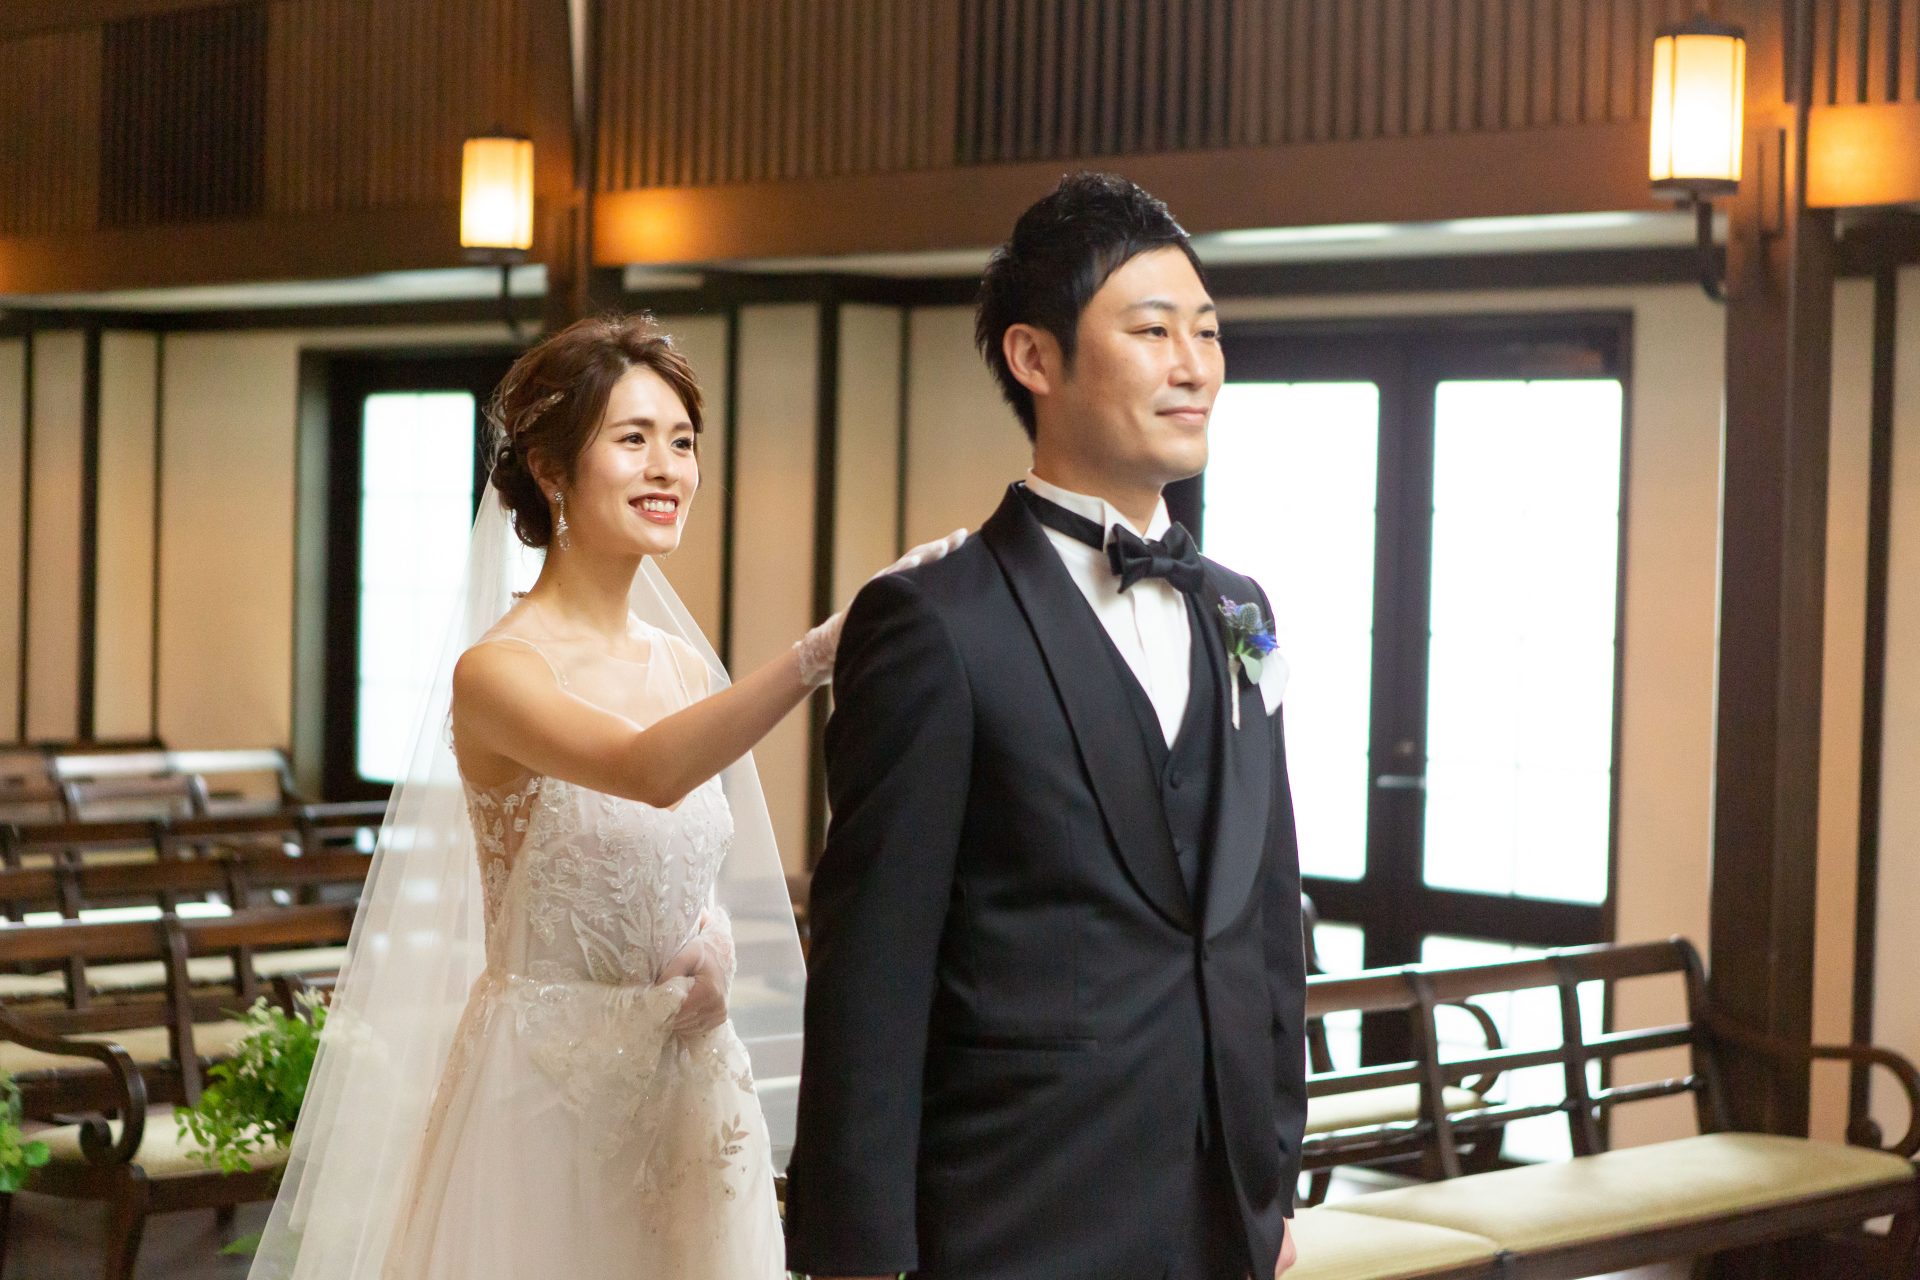 京都エリアにてお式をお考えの花嫁様におすすめしたいインポートドレスとフォーマルタキシード